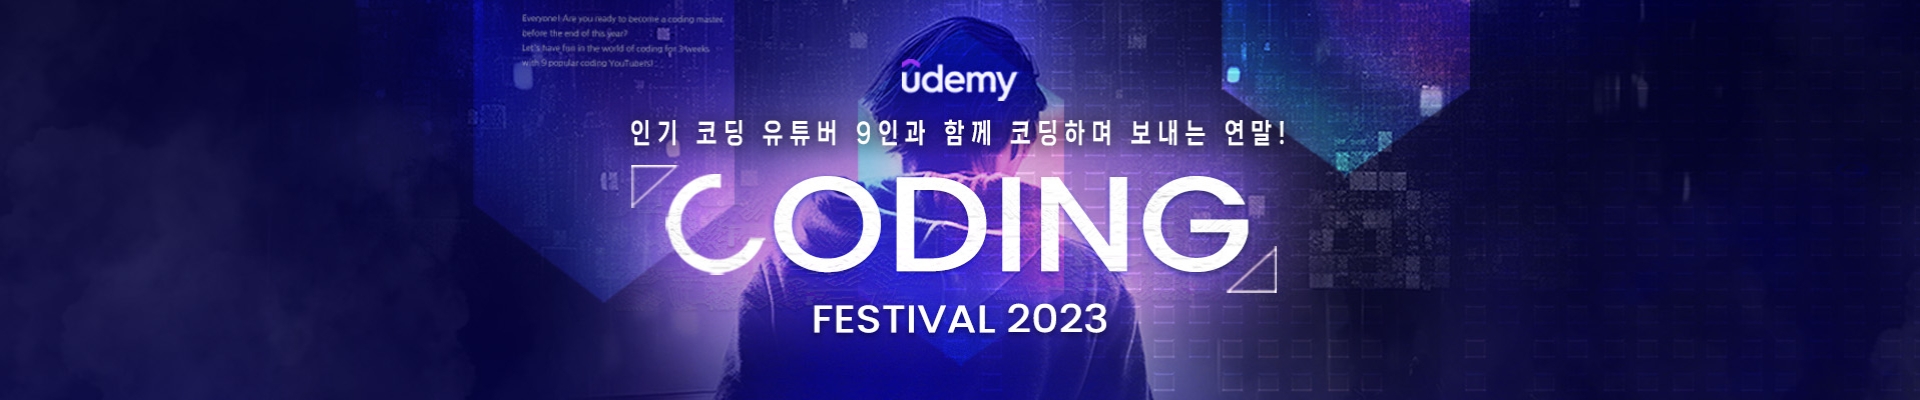 Udemy 코딩 페스티벌 2023